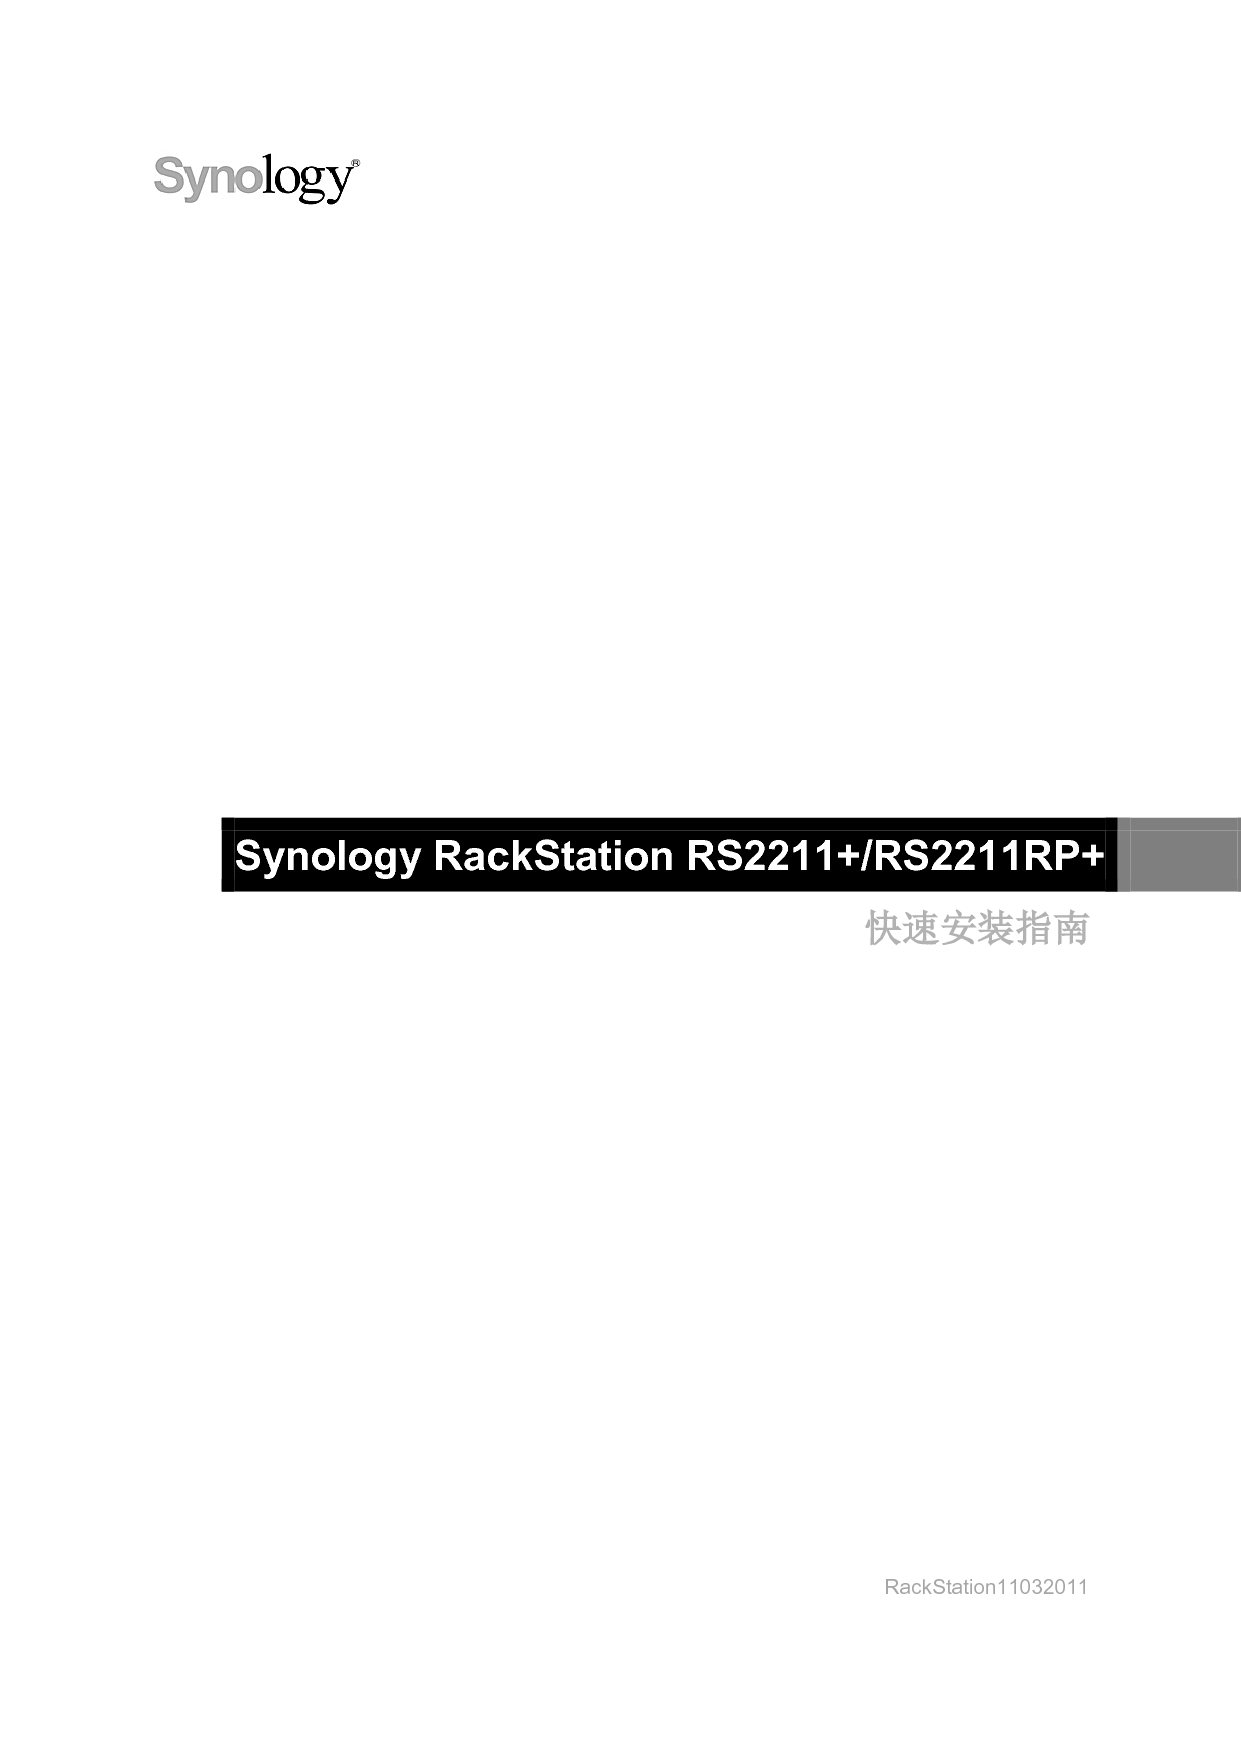 群晖 Synology RS2211+ 快速安装指南 封面